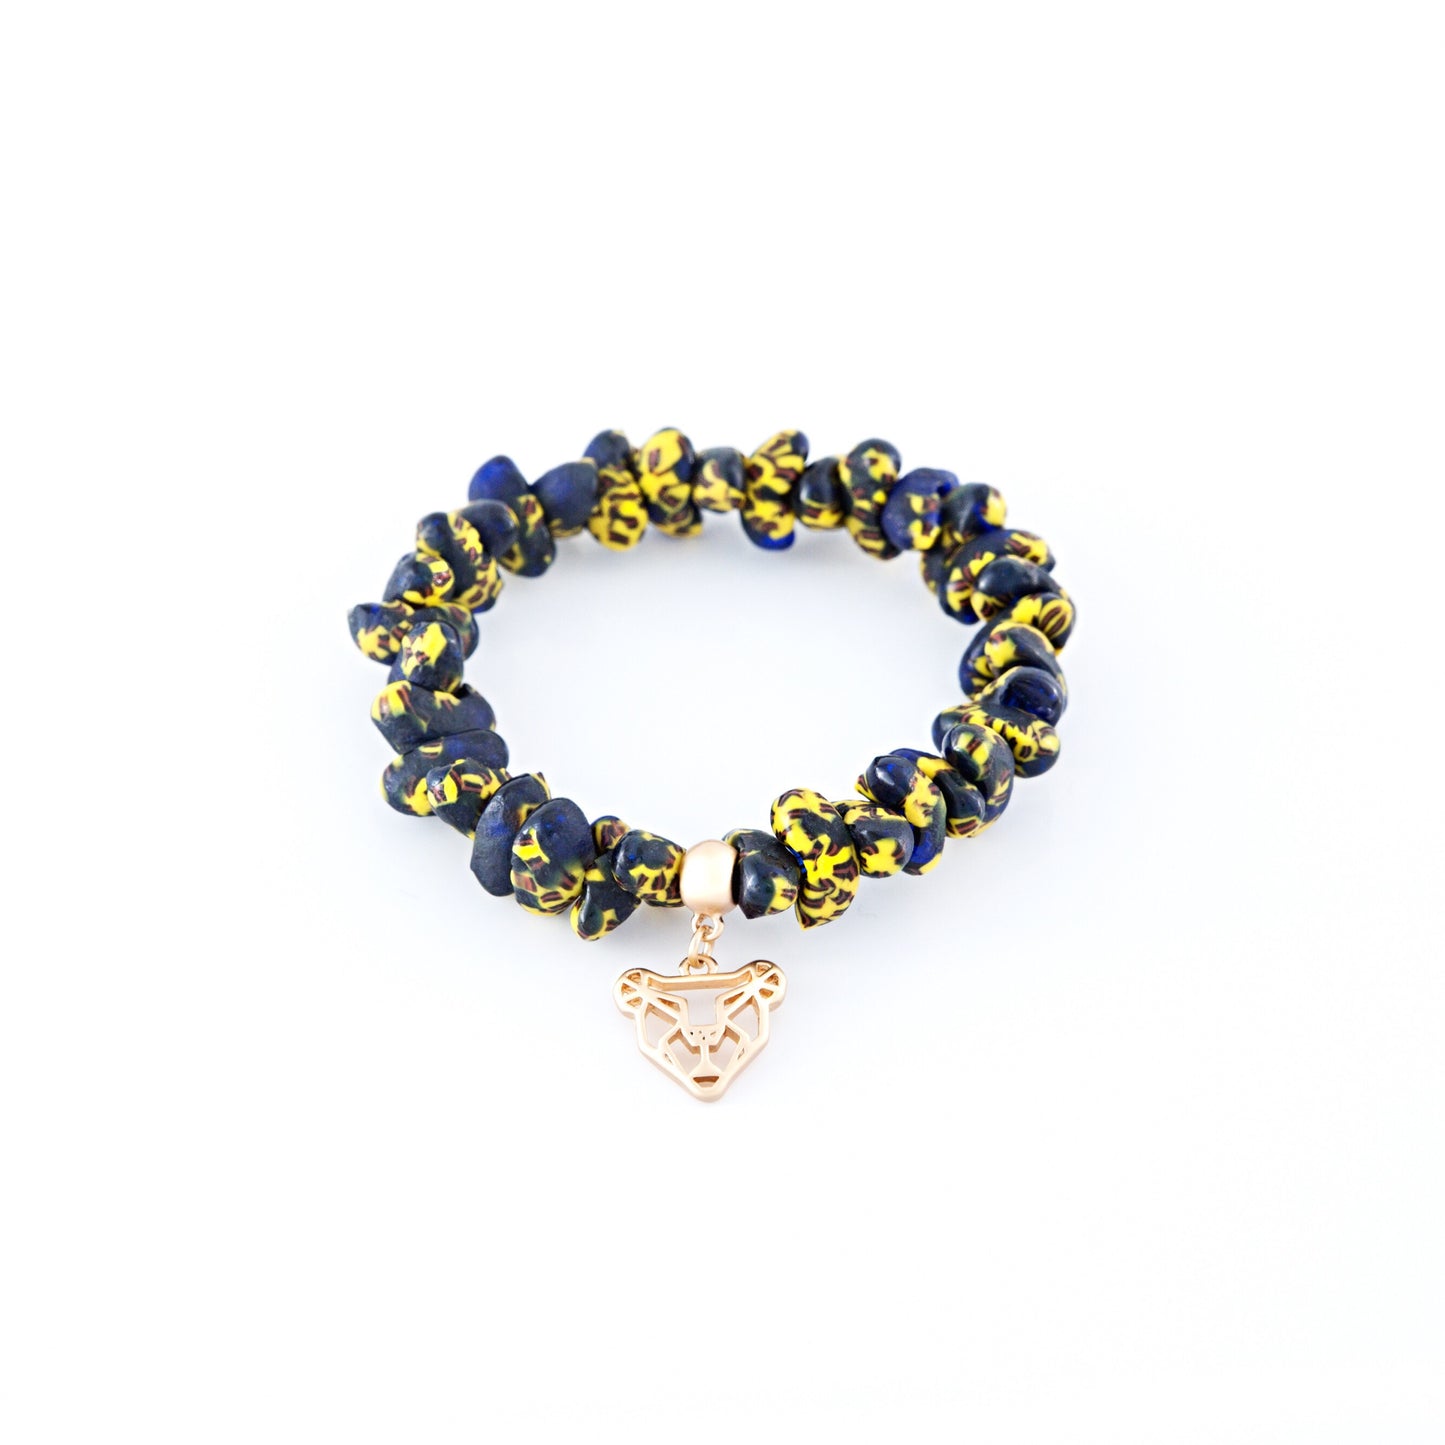 Keelia Handmade Glass Bead Stretch Bracelet with Charm